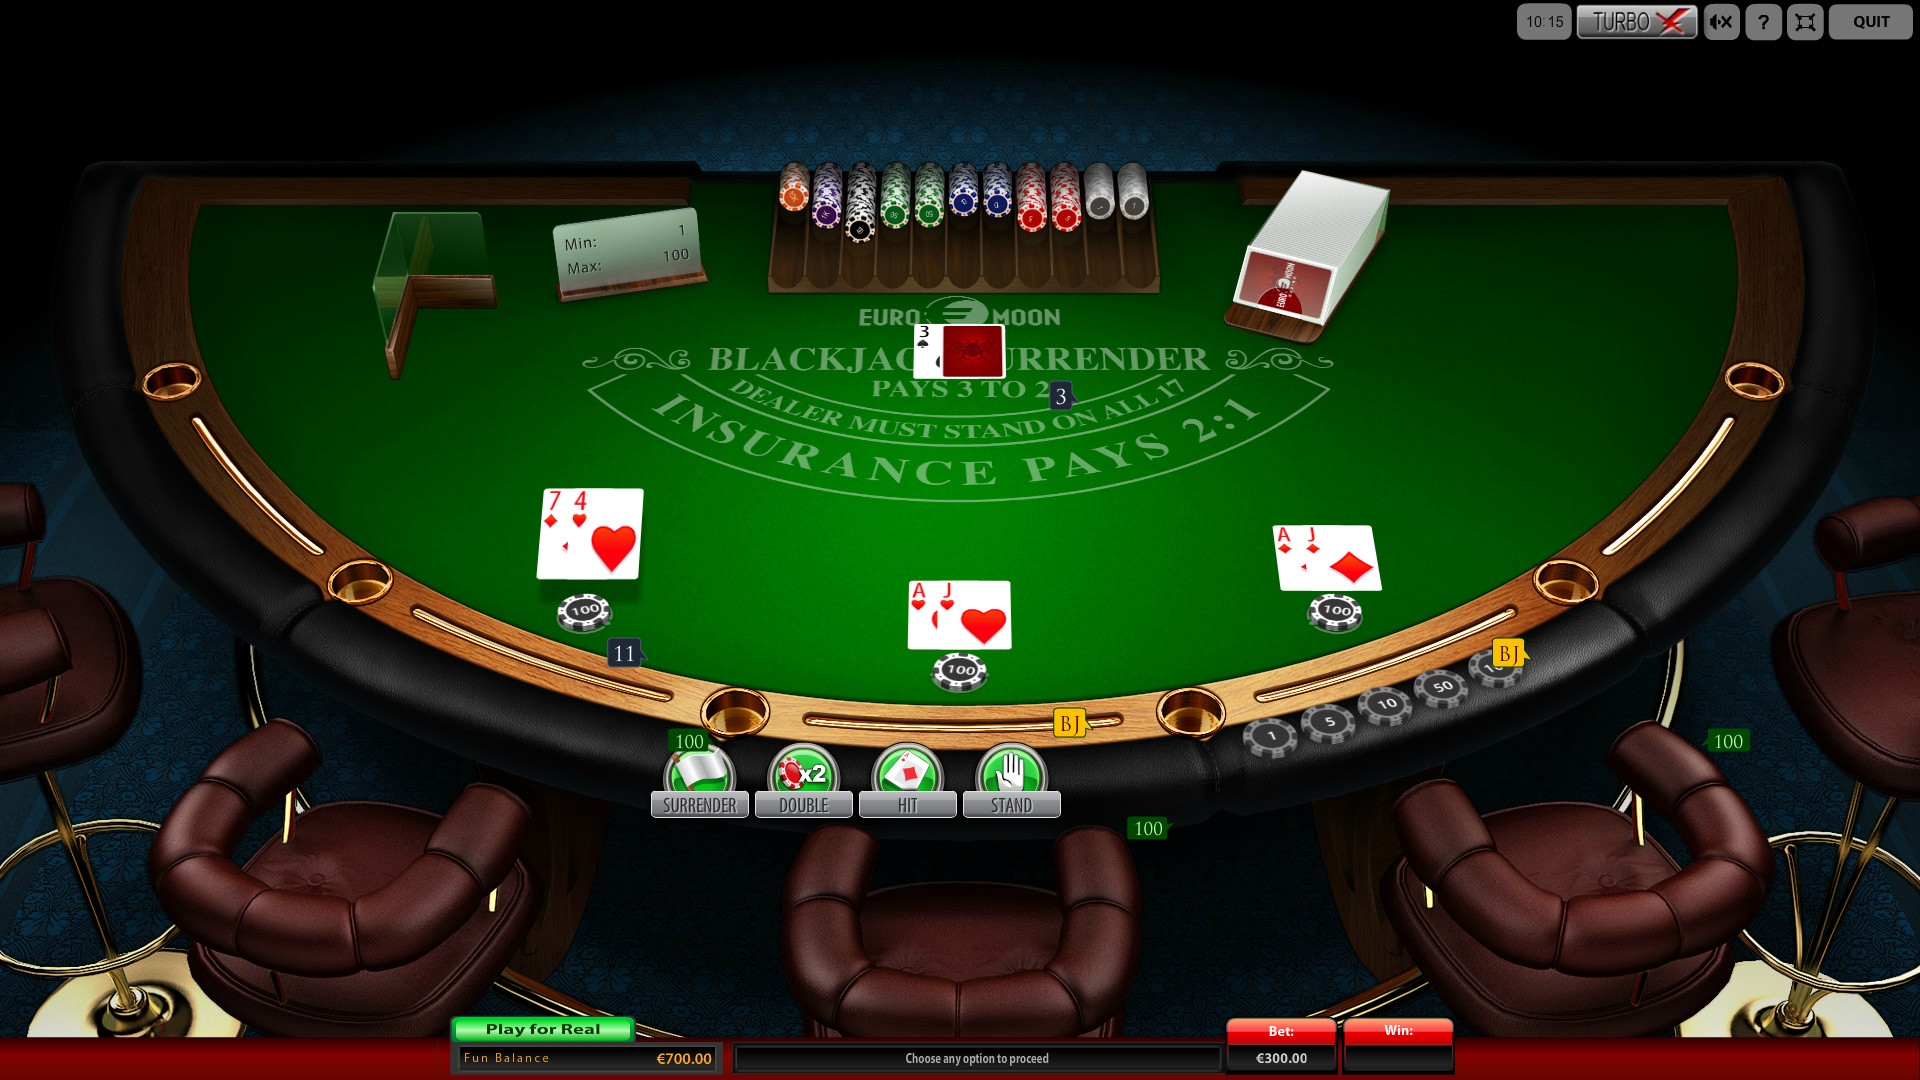 Surrender Blackjack (Surrender Blackjack) from category Blackjack